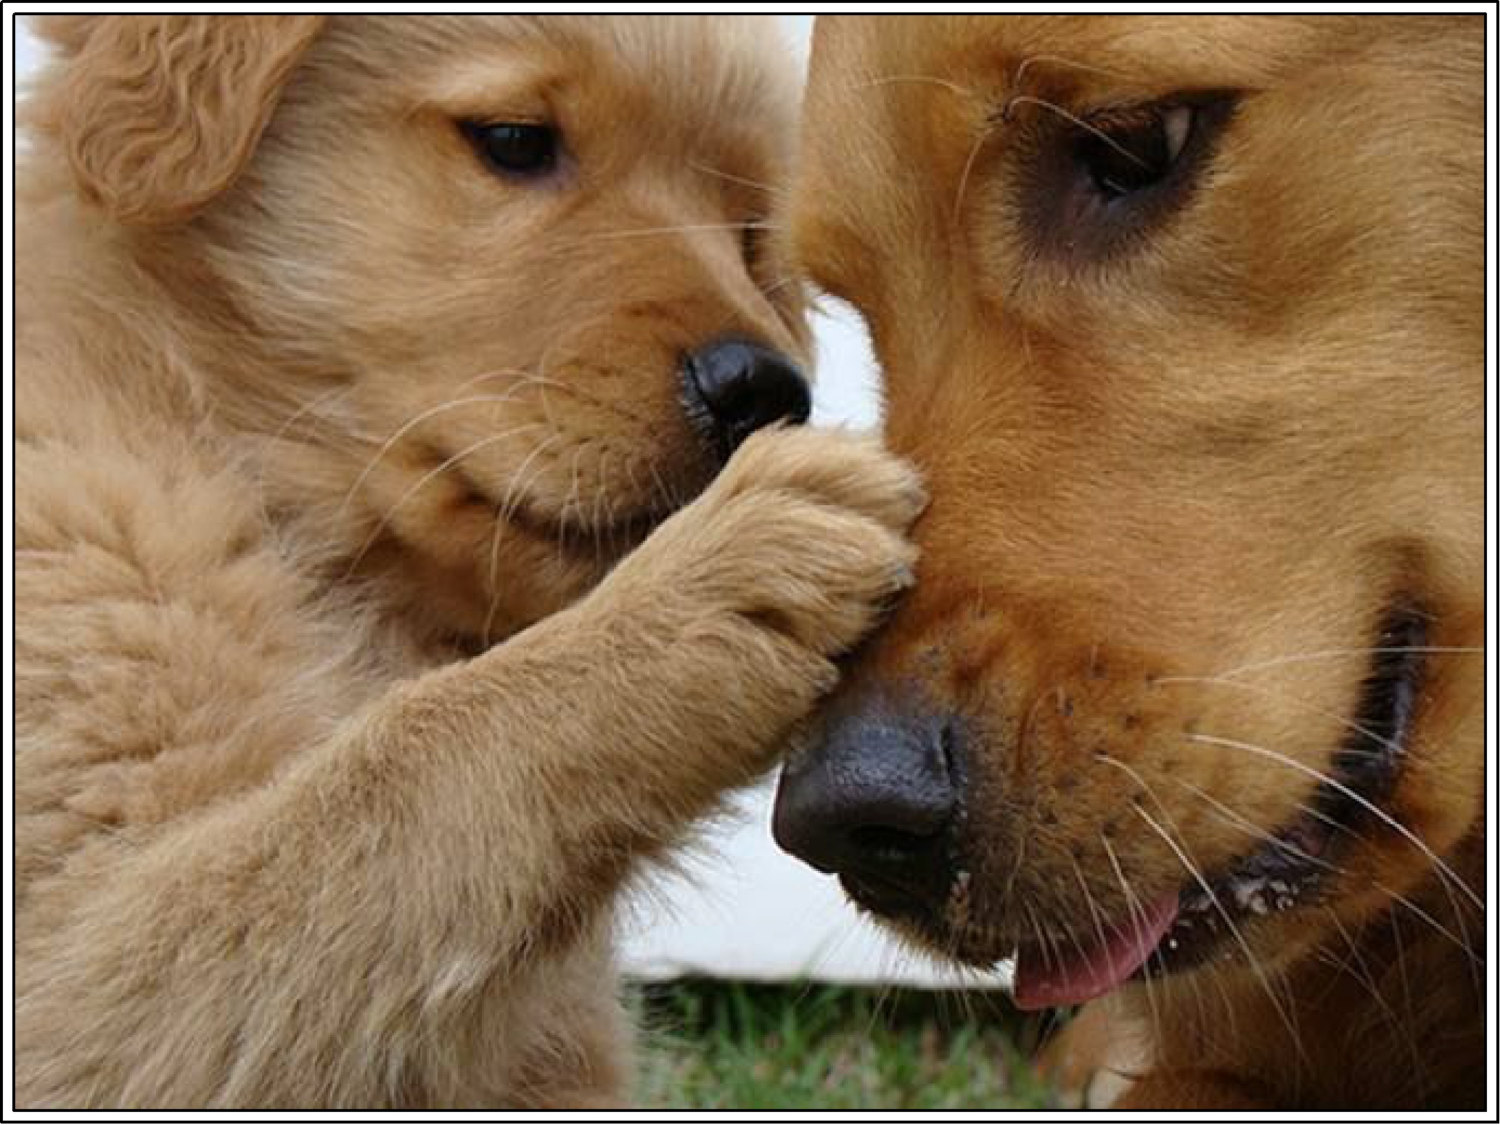 Golden Retrievers were originally bred to serve as _______ dogs.